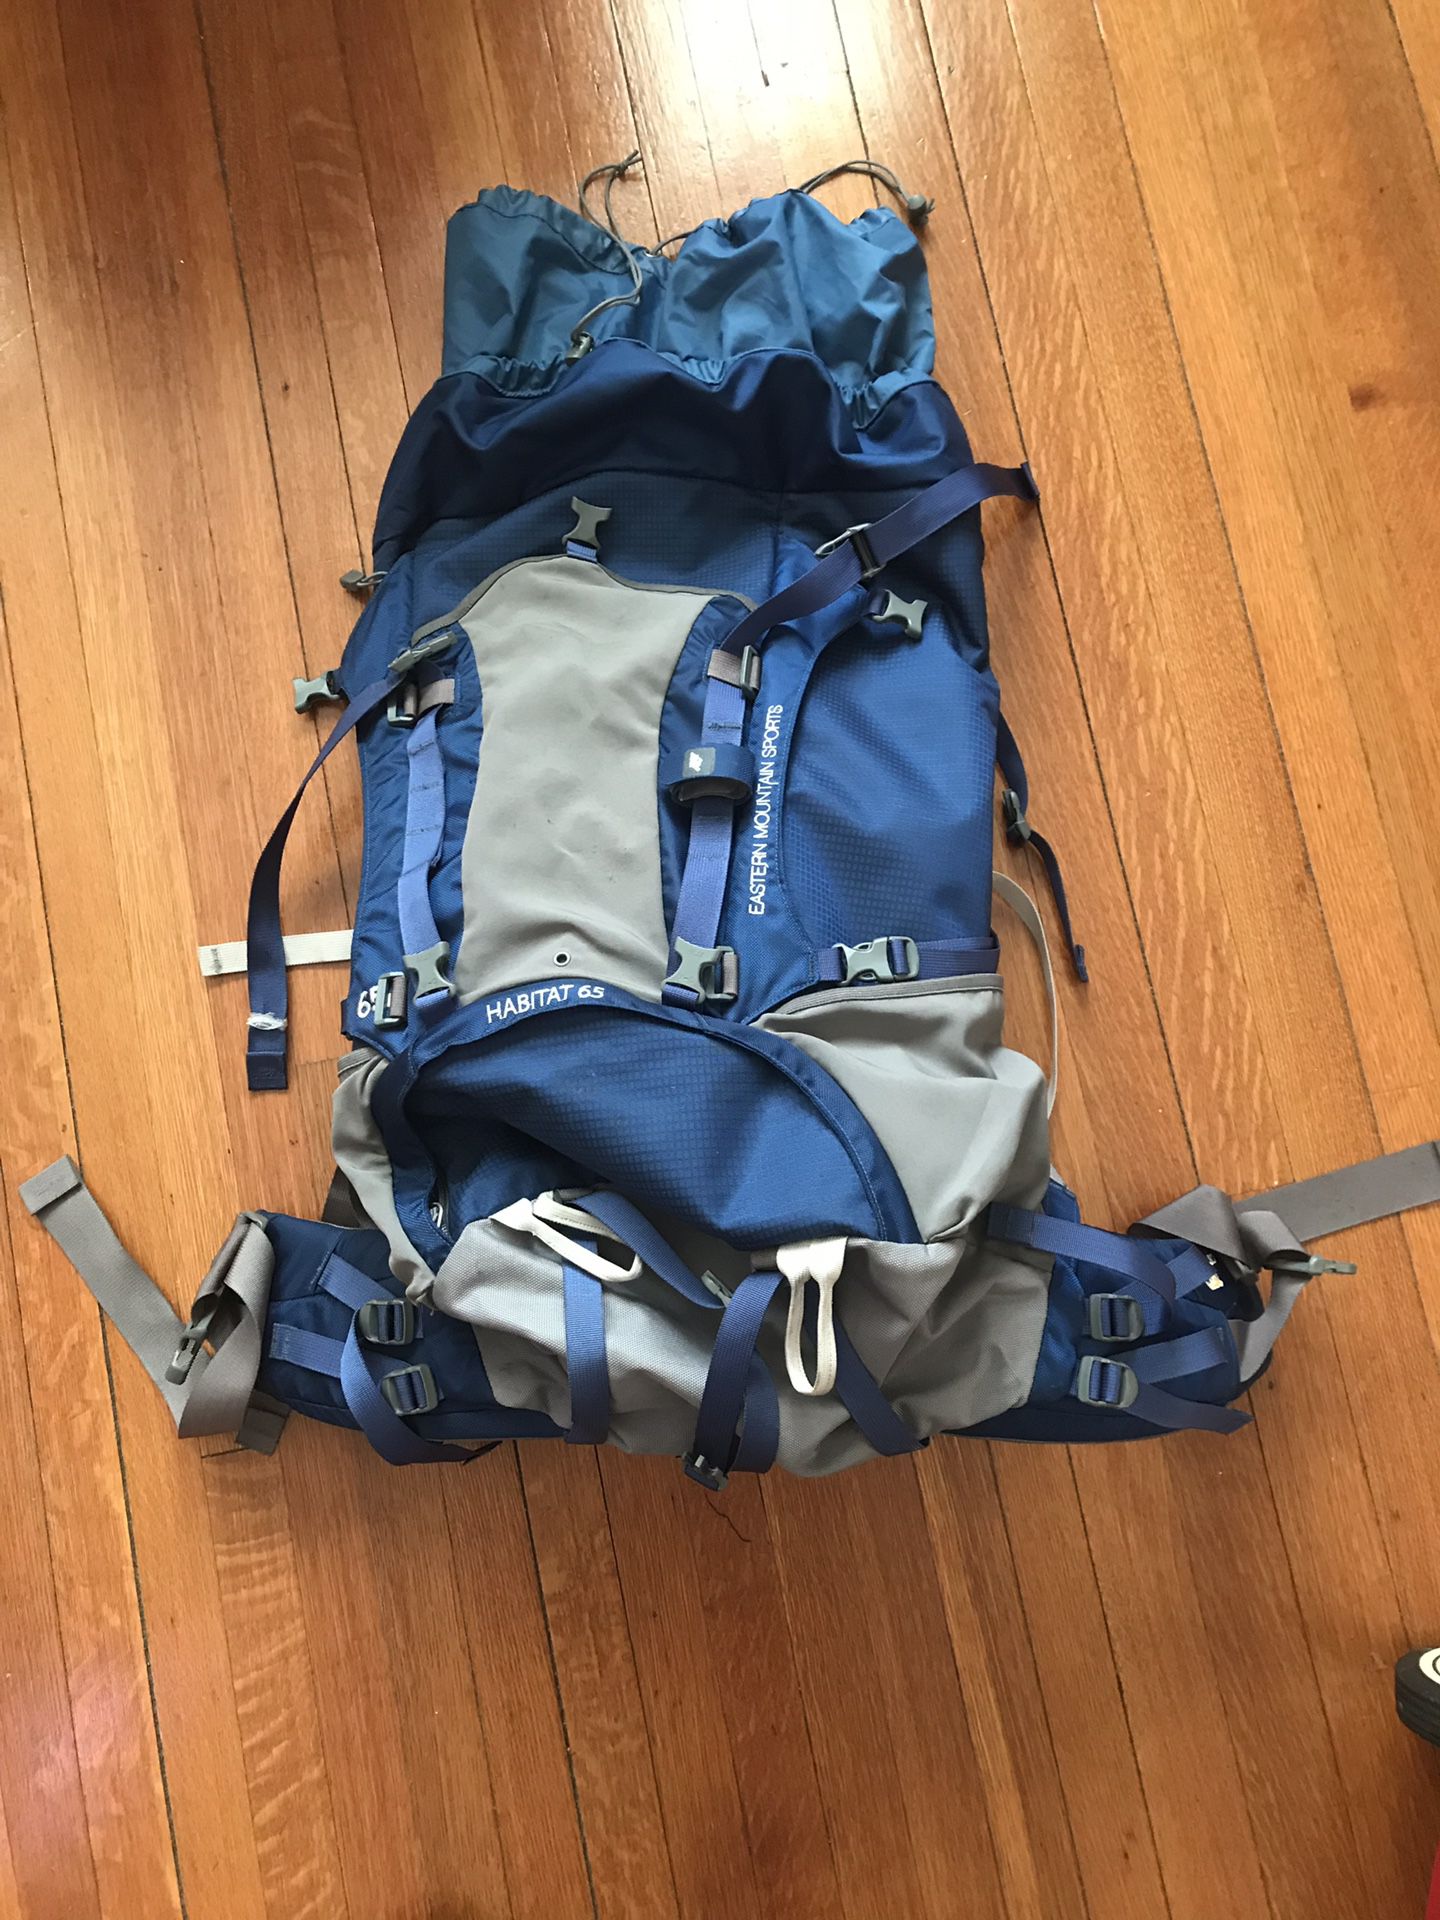 EMS hiking backpack 65 liters